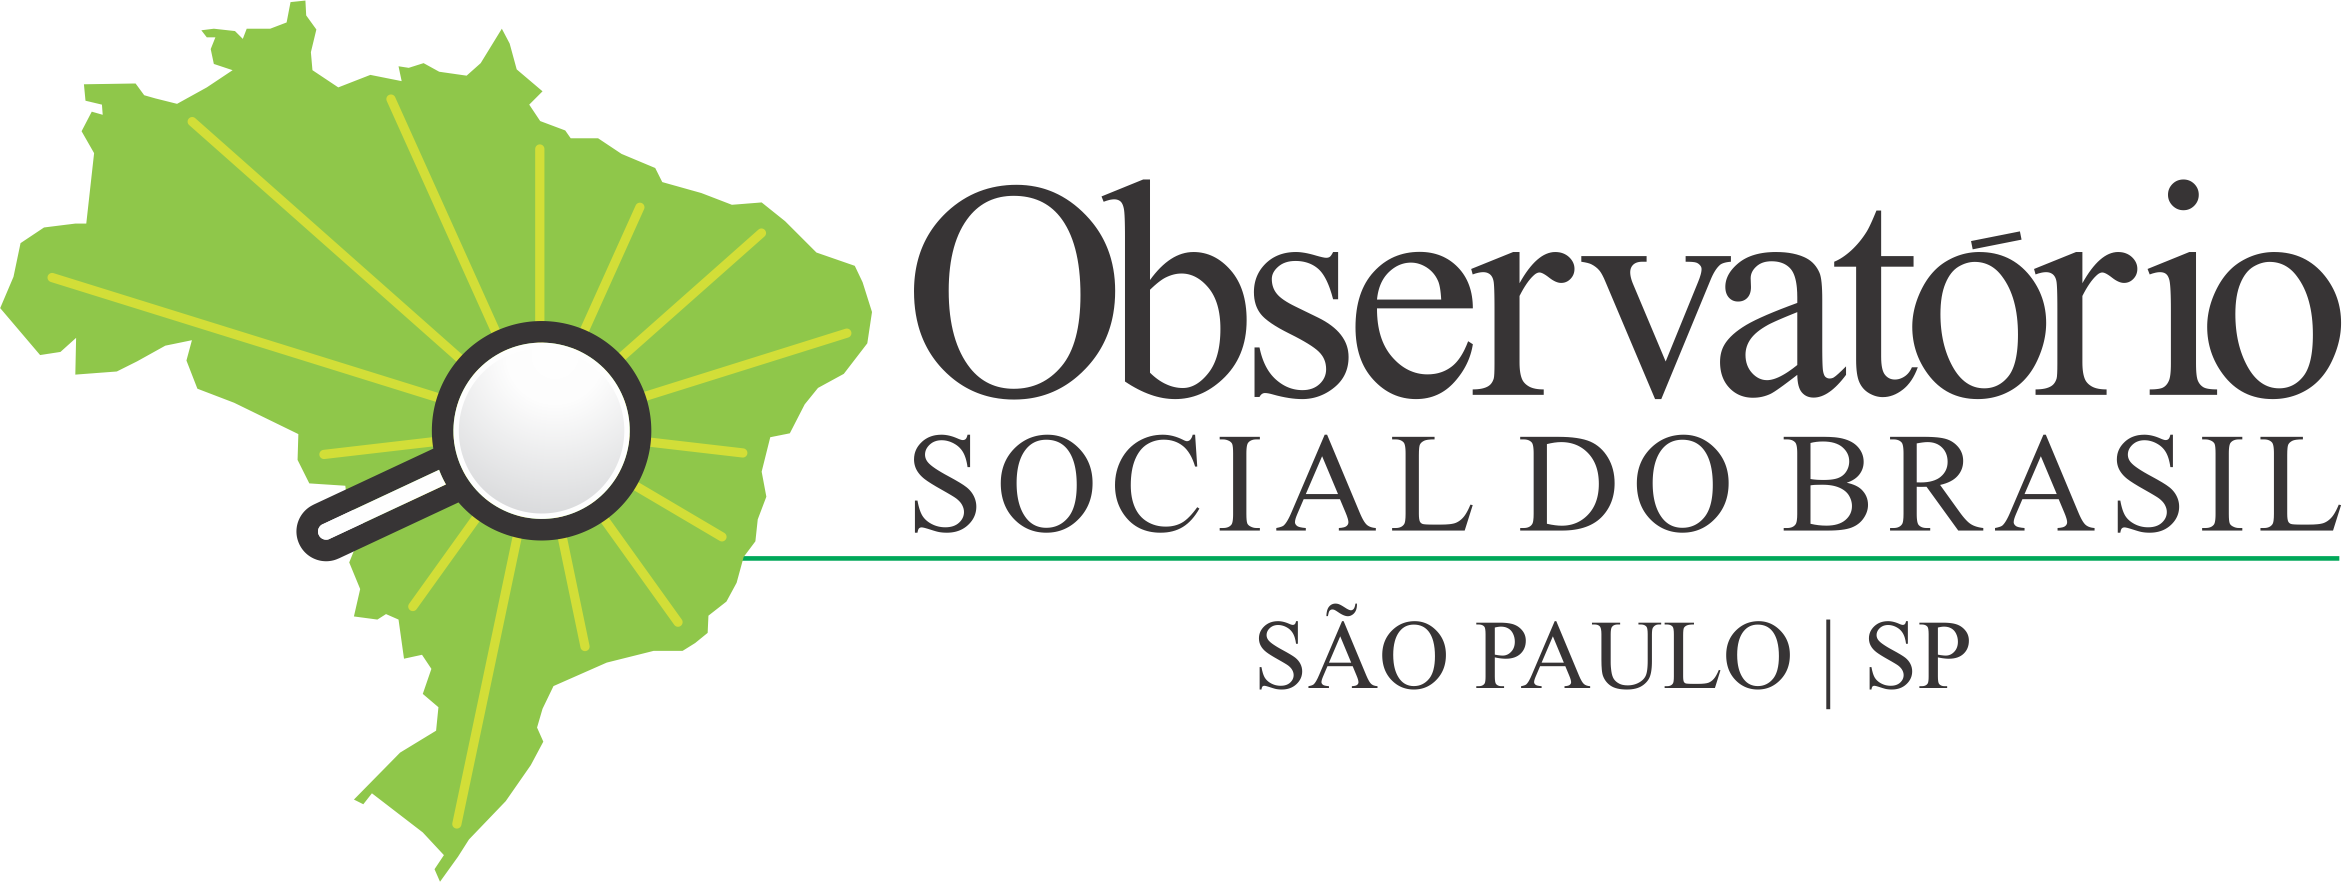 Logo Observatório Social do Brasil - São Paulo